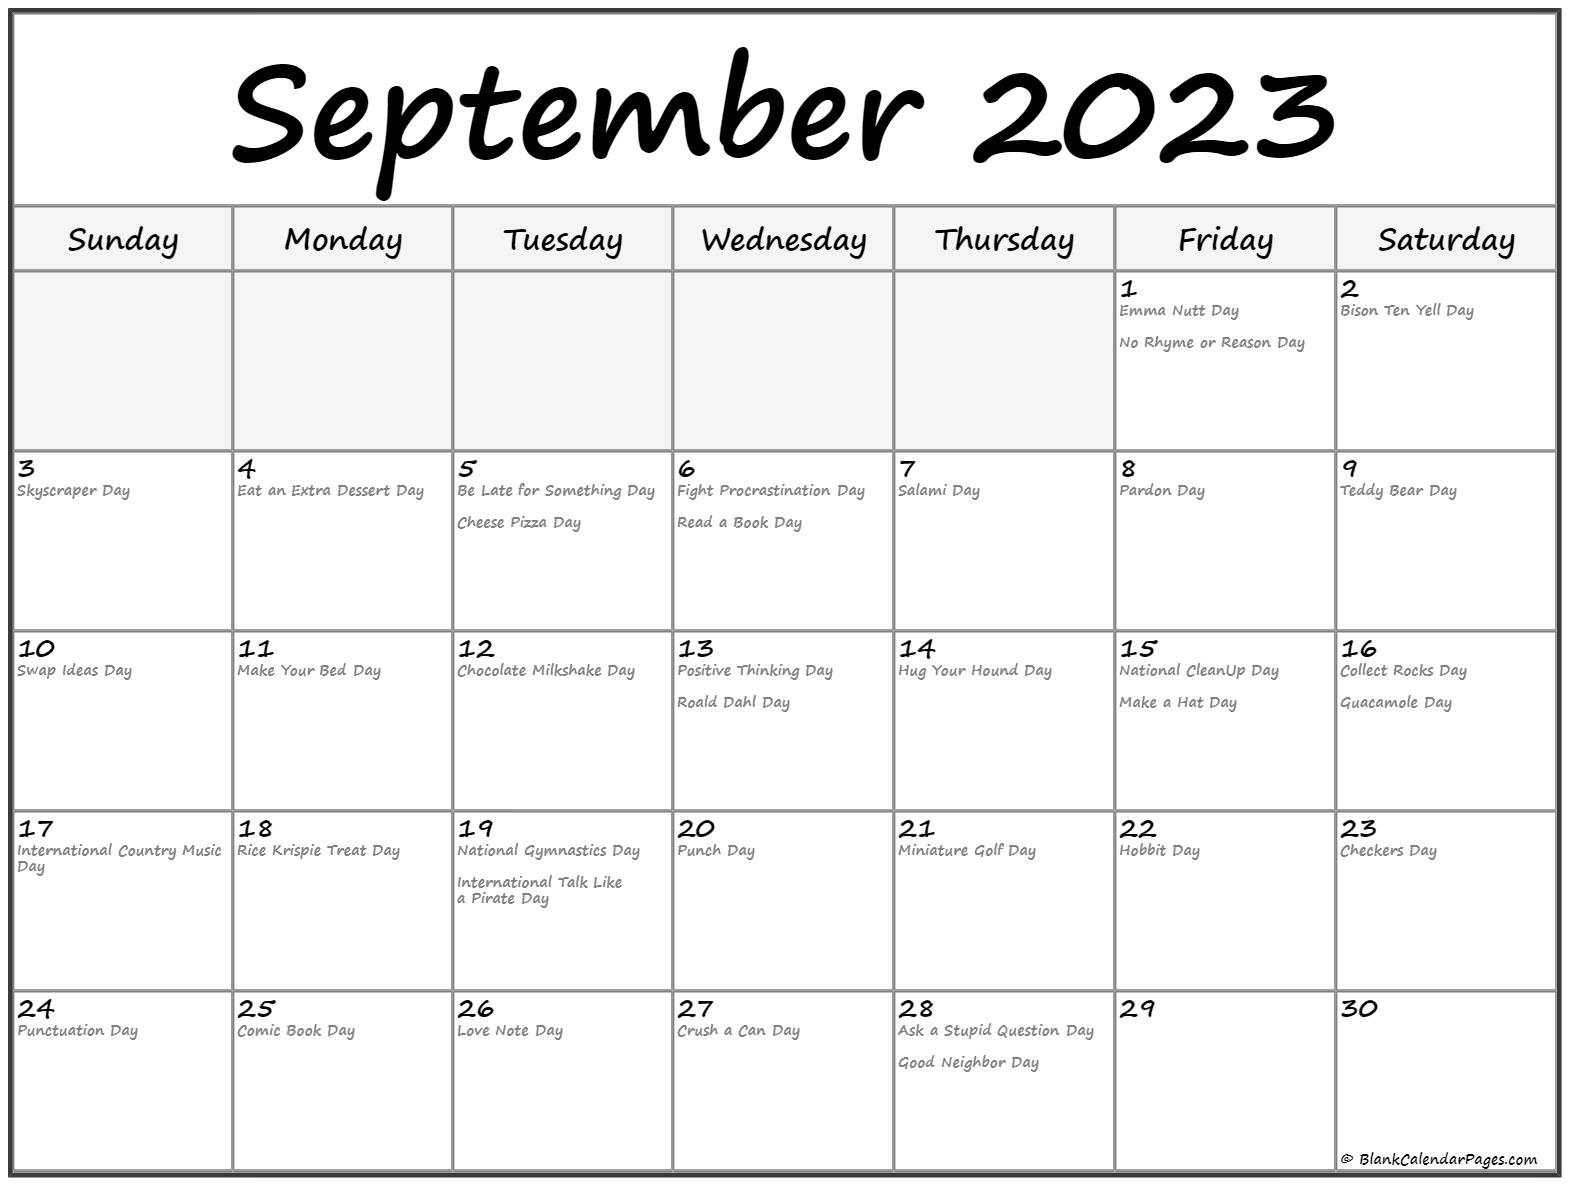 september-2023-calendar-national-get-calendar-2023-update